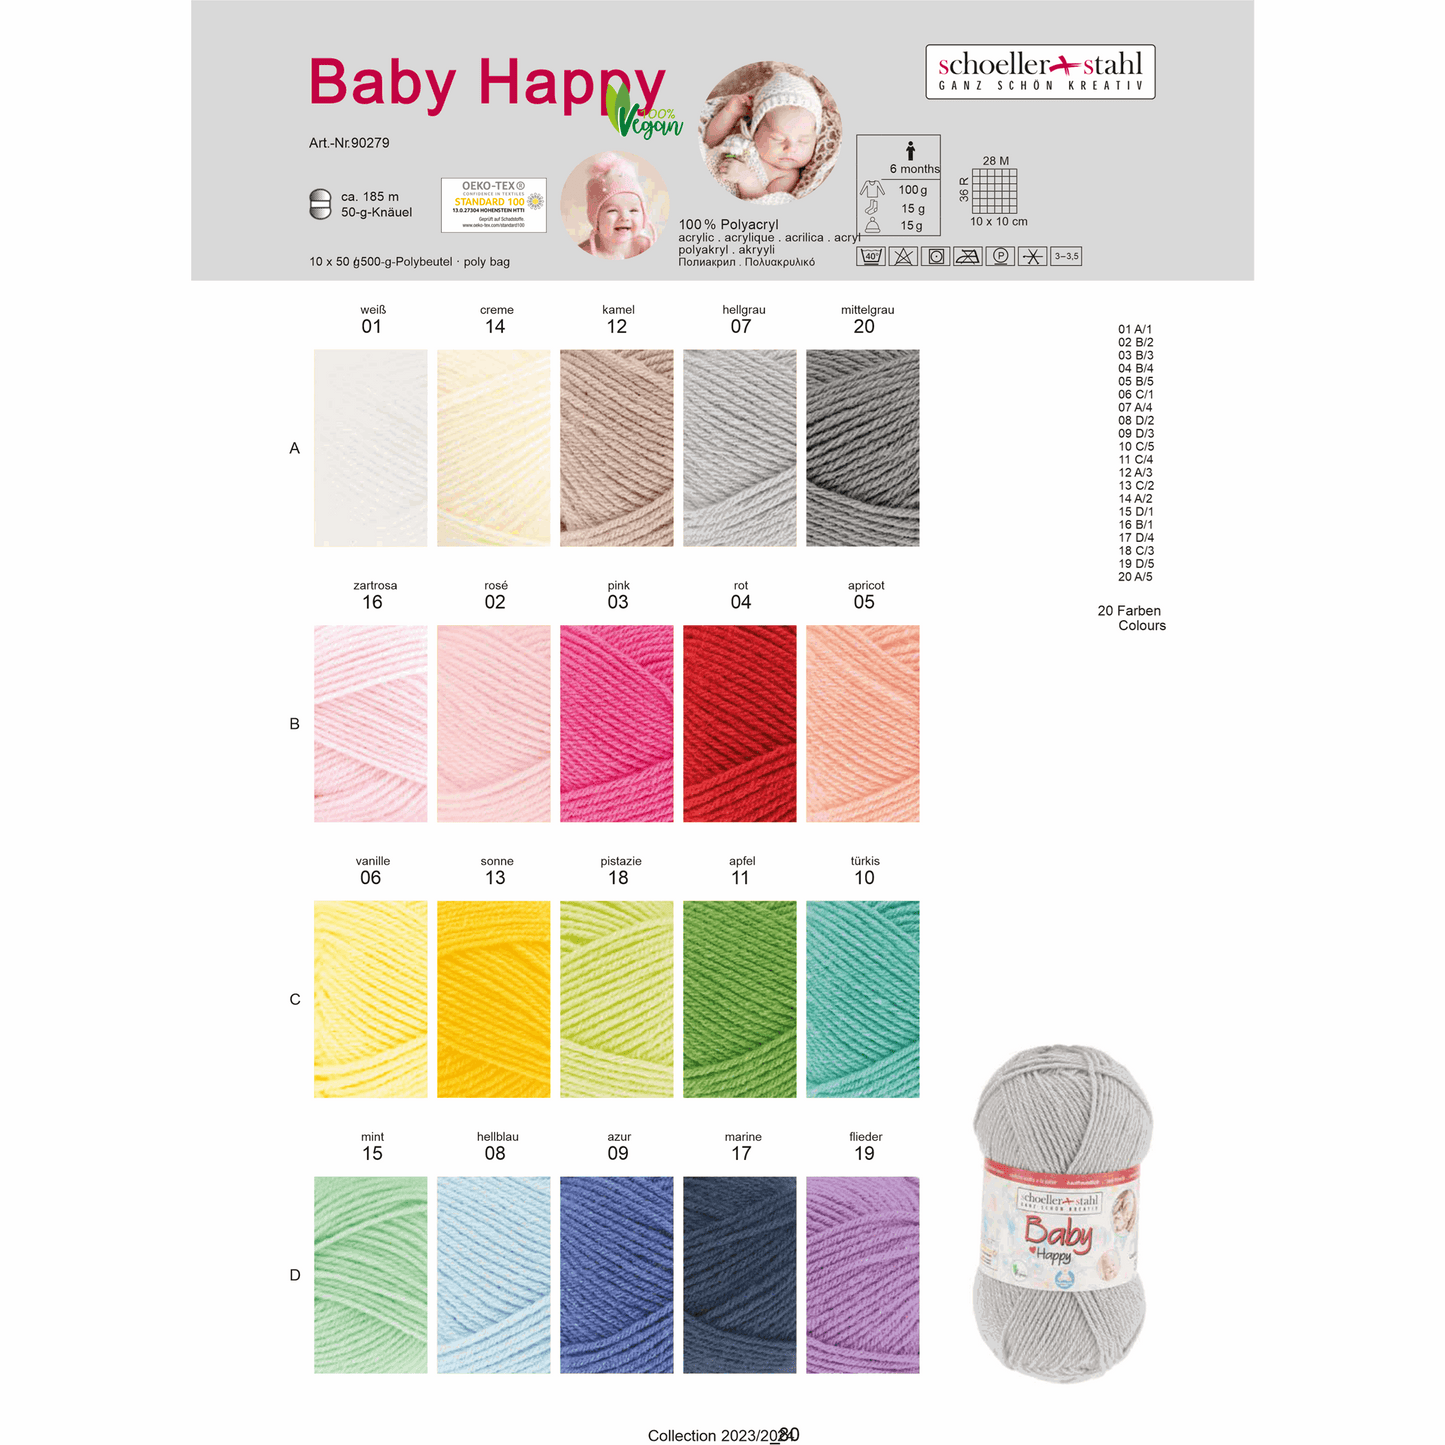 Baby happy 50g, 90279, color 19, lilac